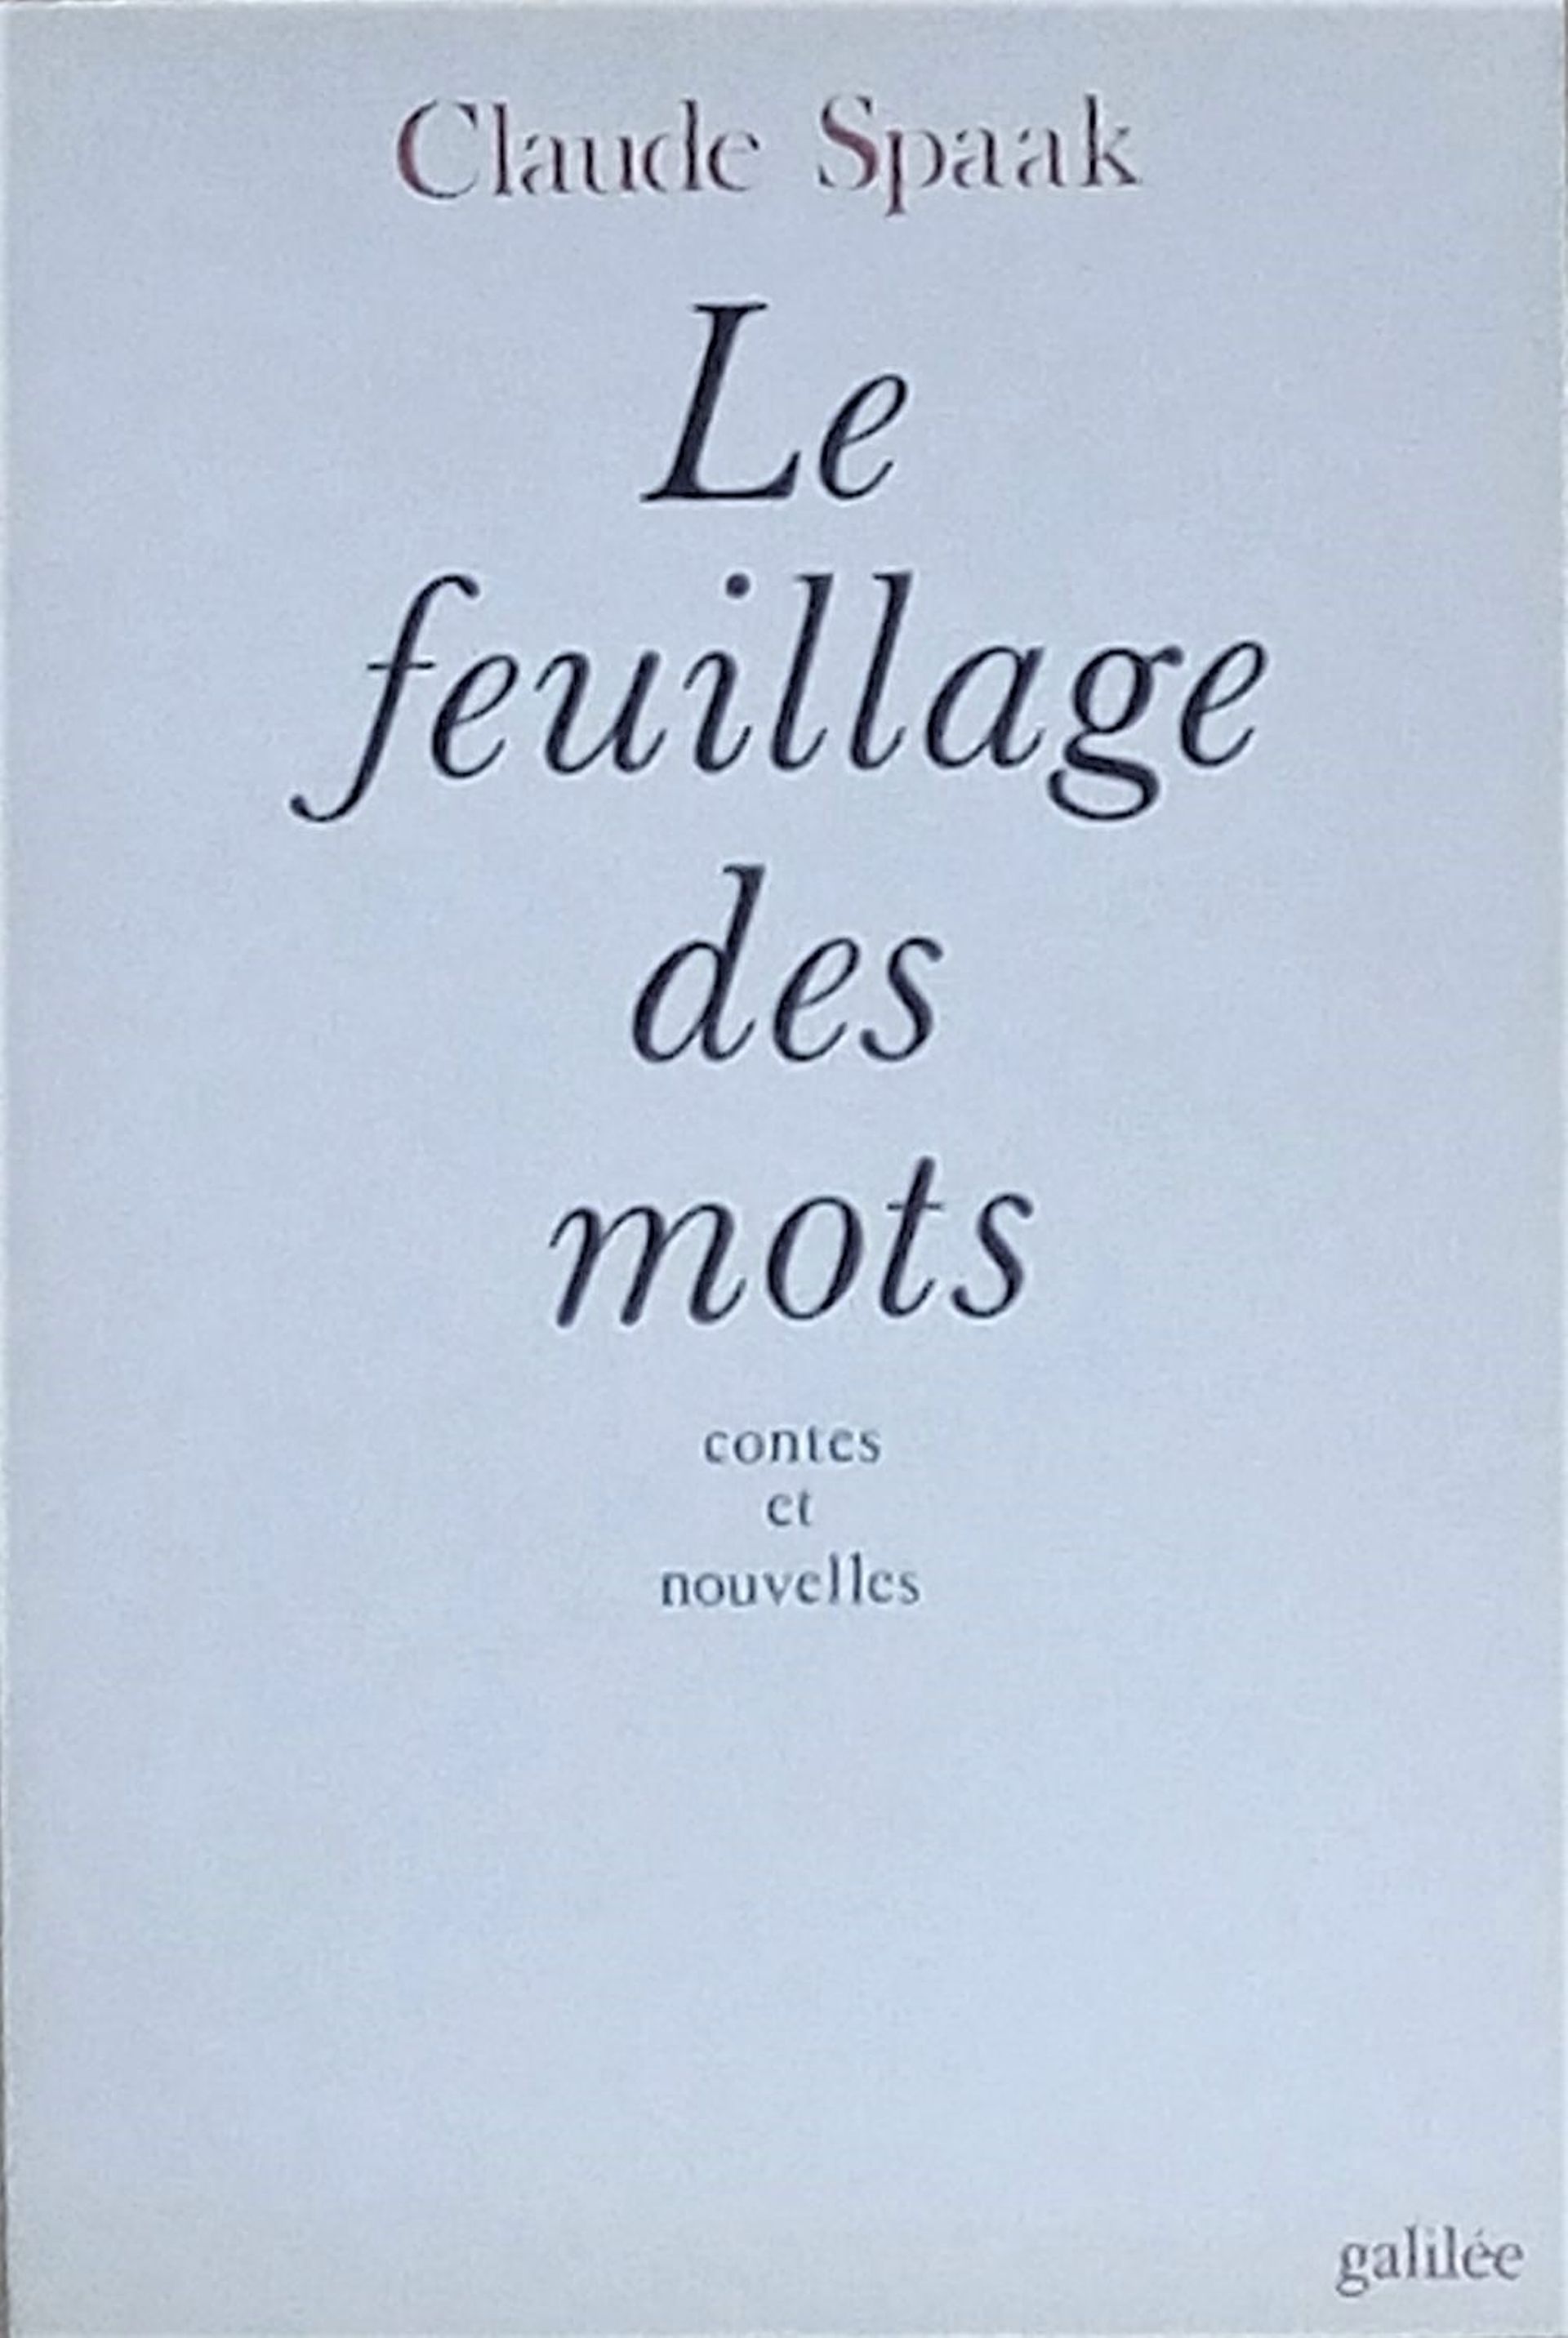 "Le Feuillage des mots", éd. Galilée, 1980.